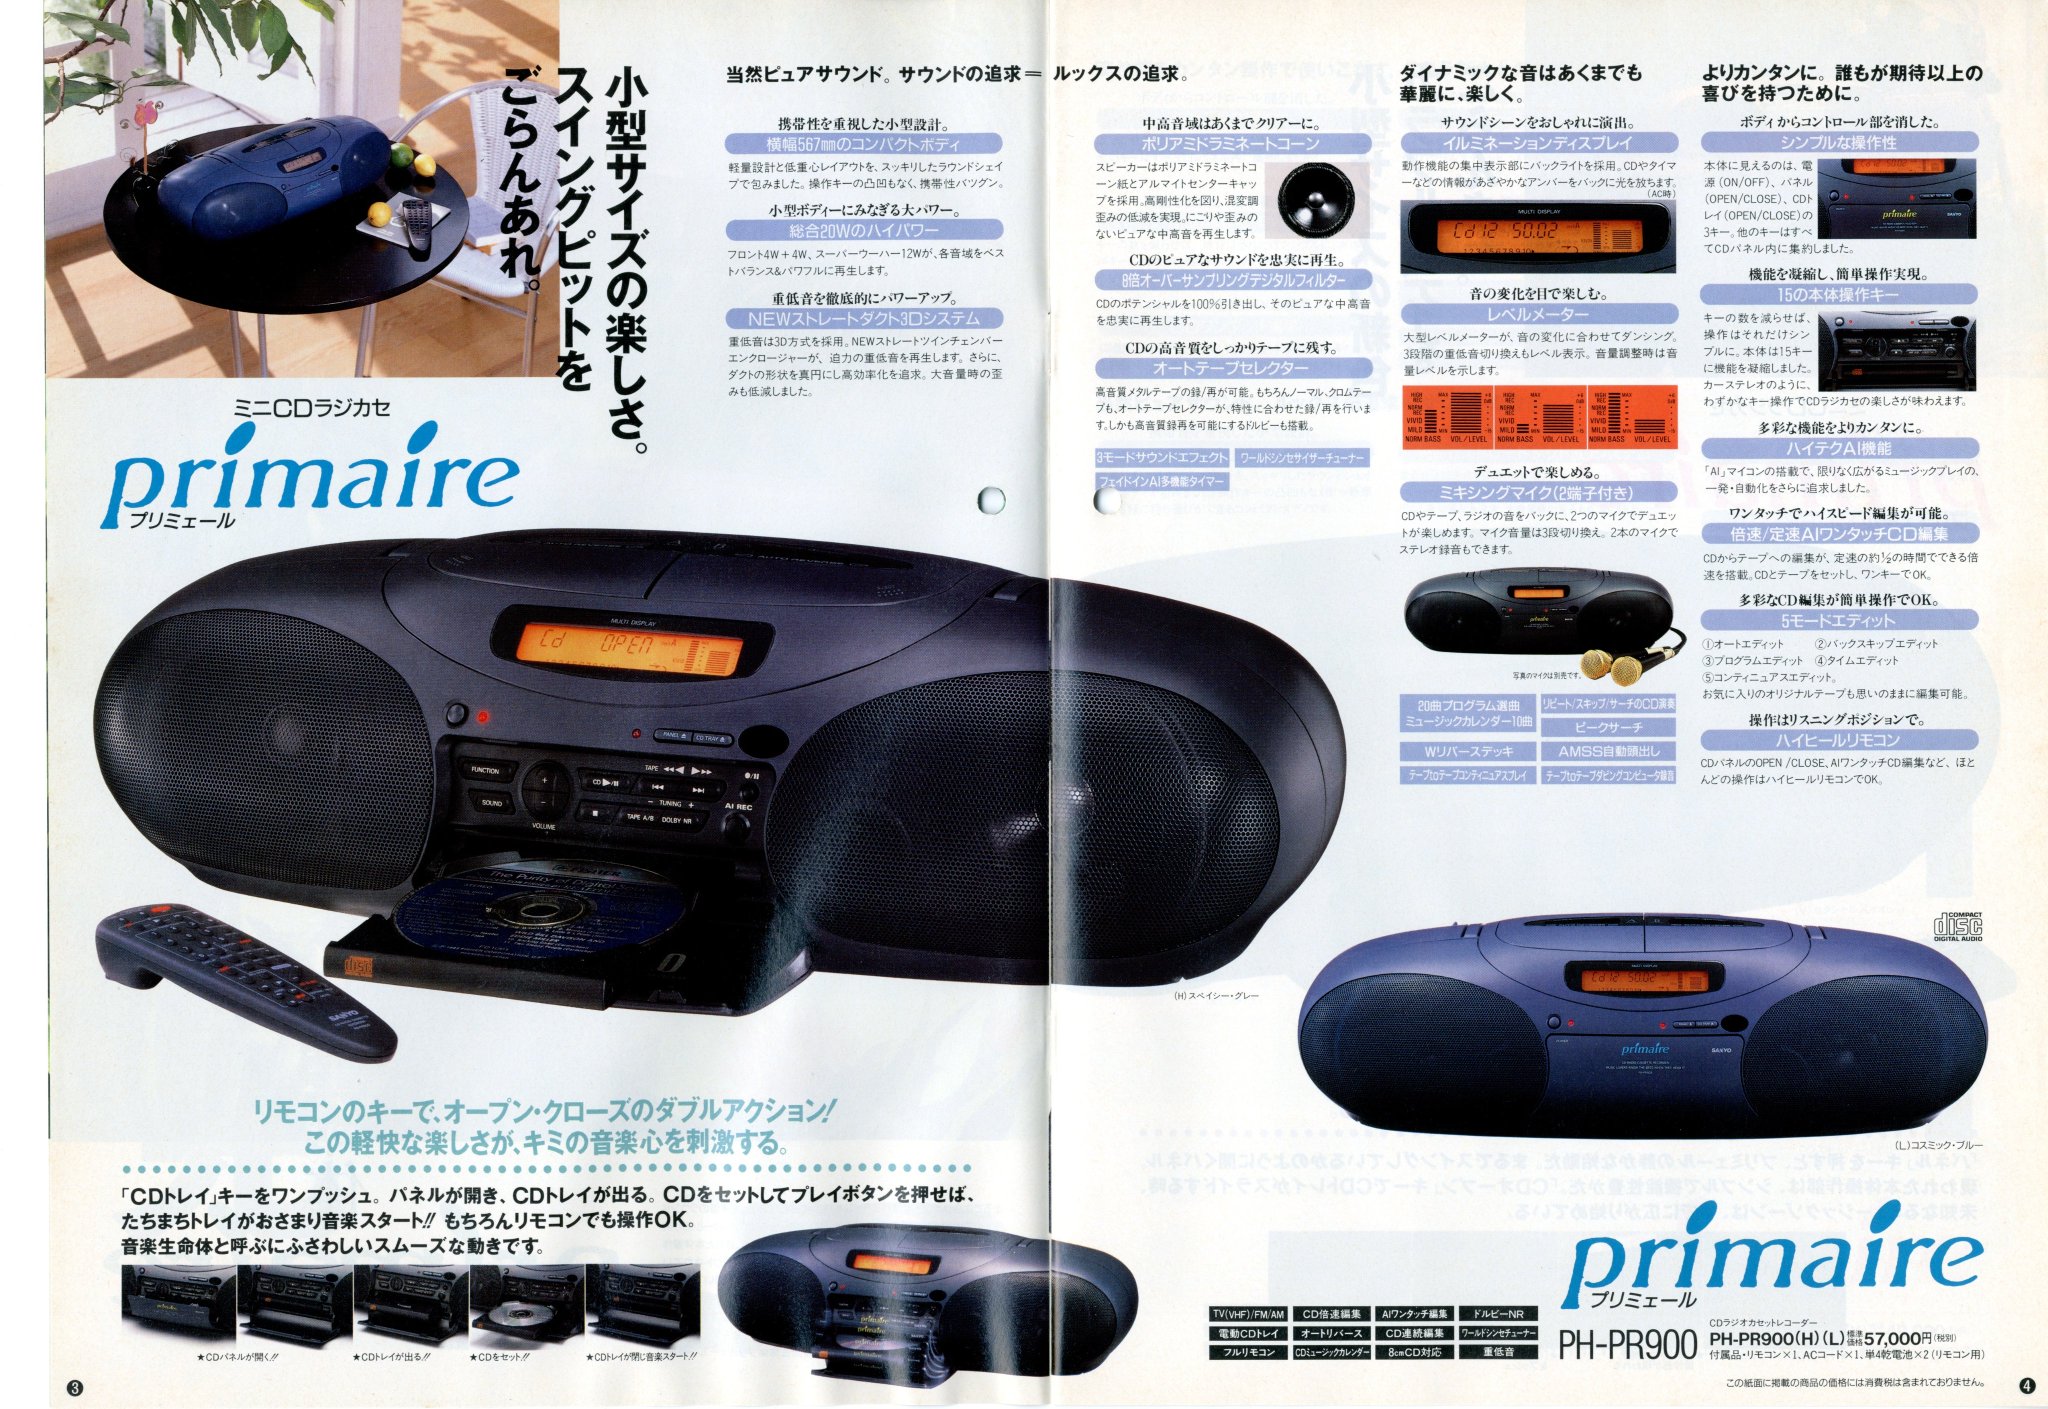 サンヨー PH-PR900 リモコン RB-PR900